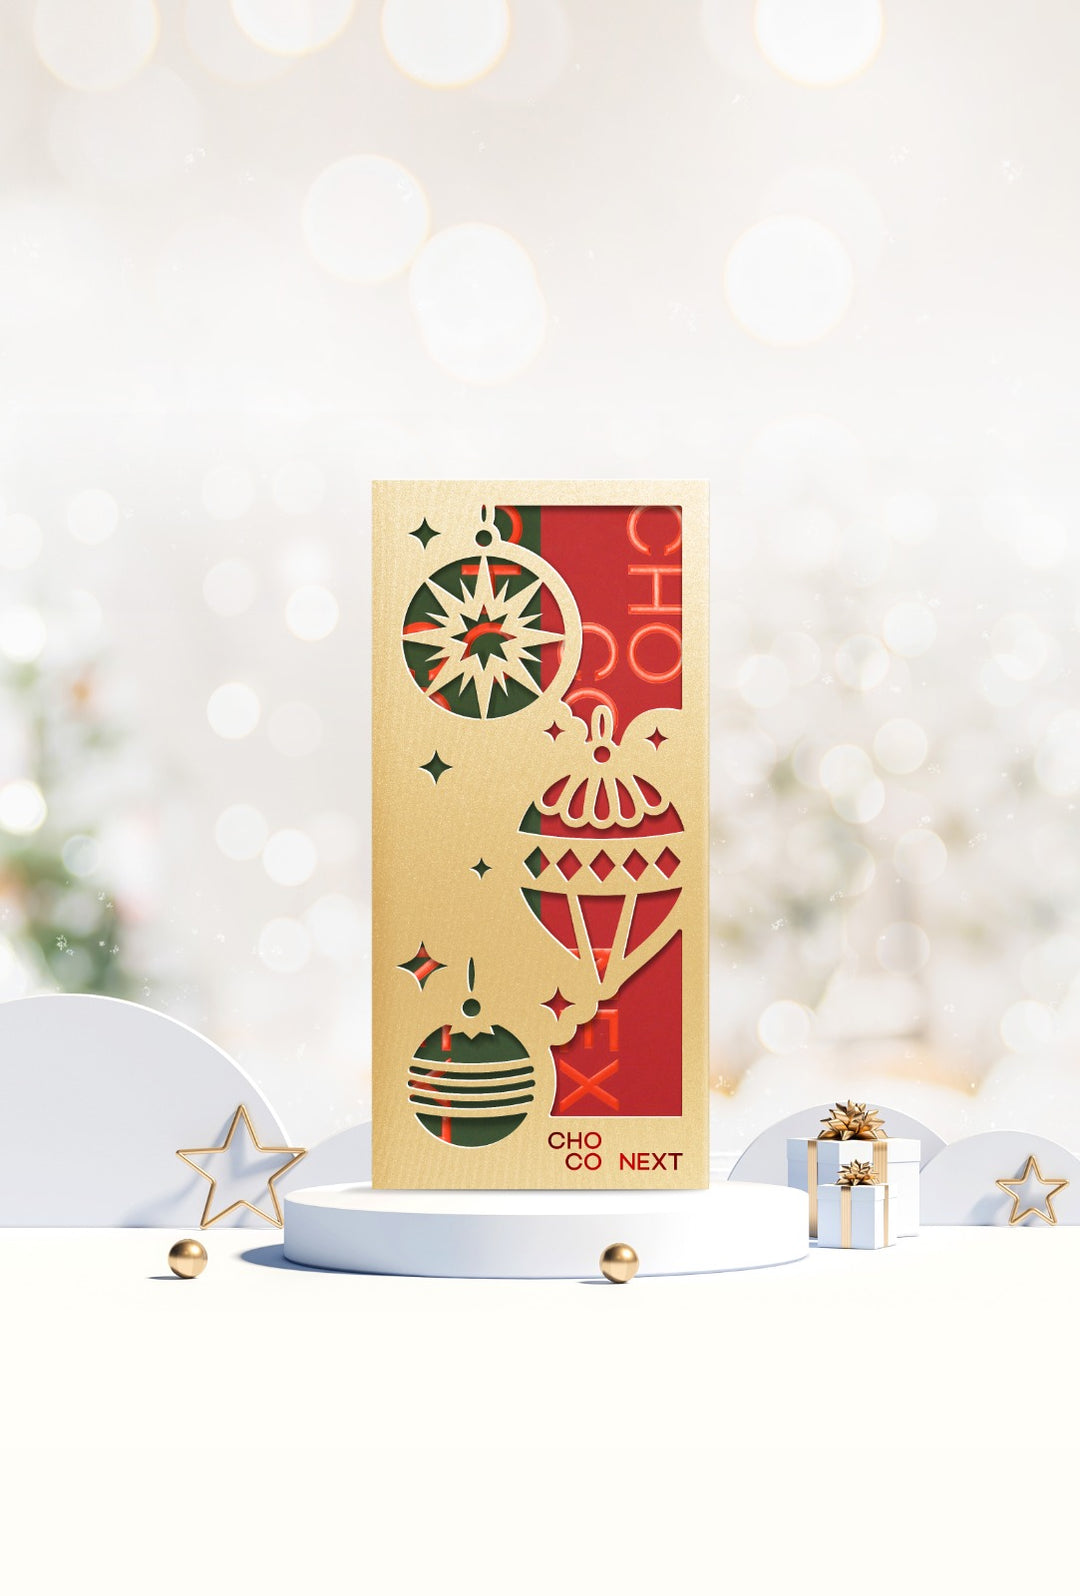 ChocoNext聖誕推出的Joyful朱古力禮盒